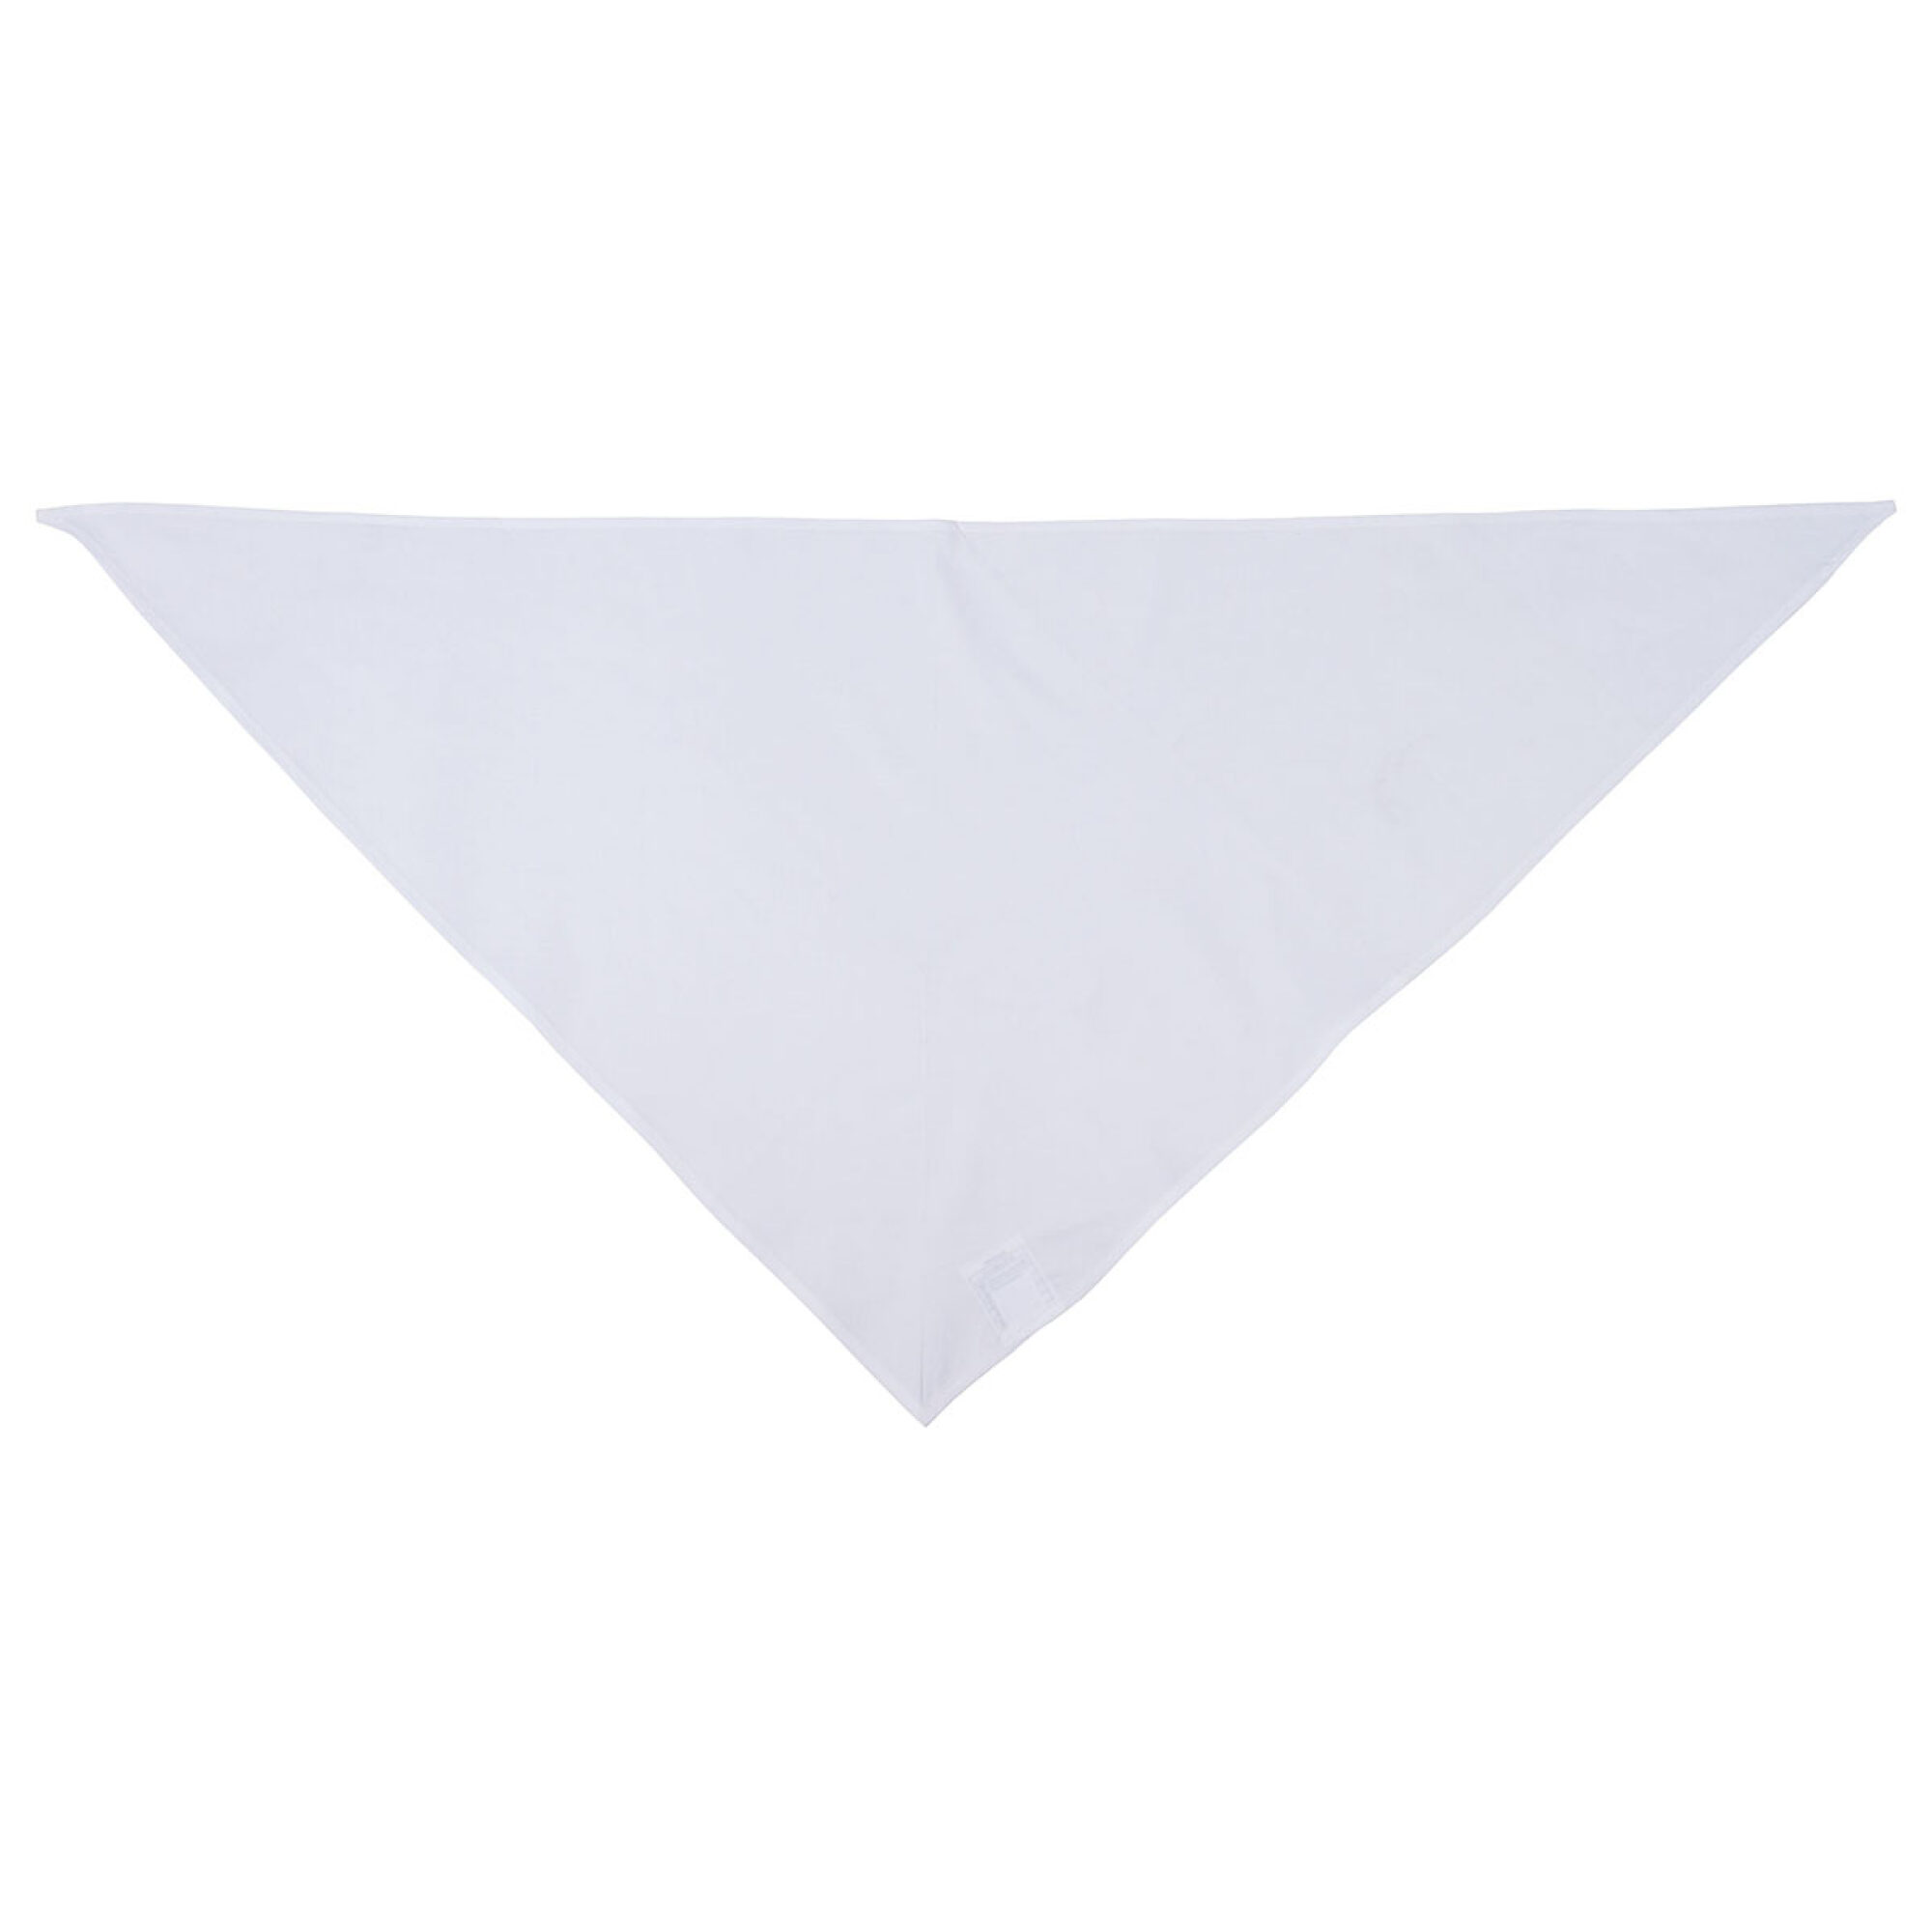 Brit. Dreieckstuch,  weiß, Gr. 105 x 50 cm,  neuw. (10 Stück)